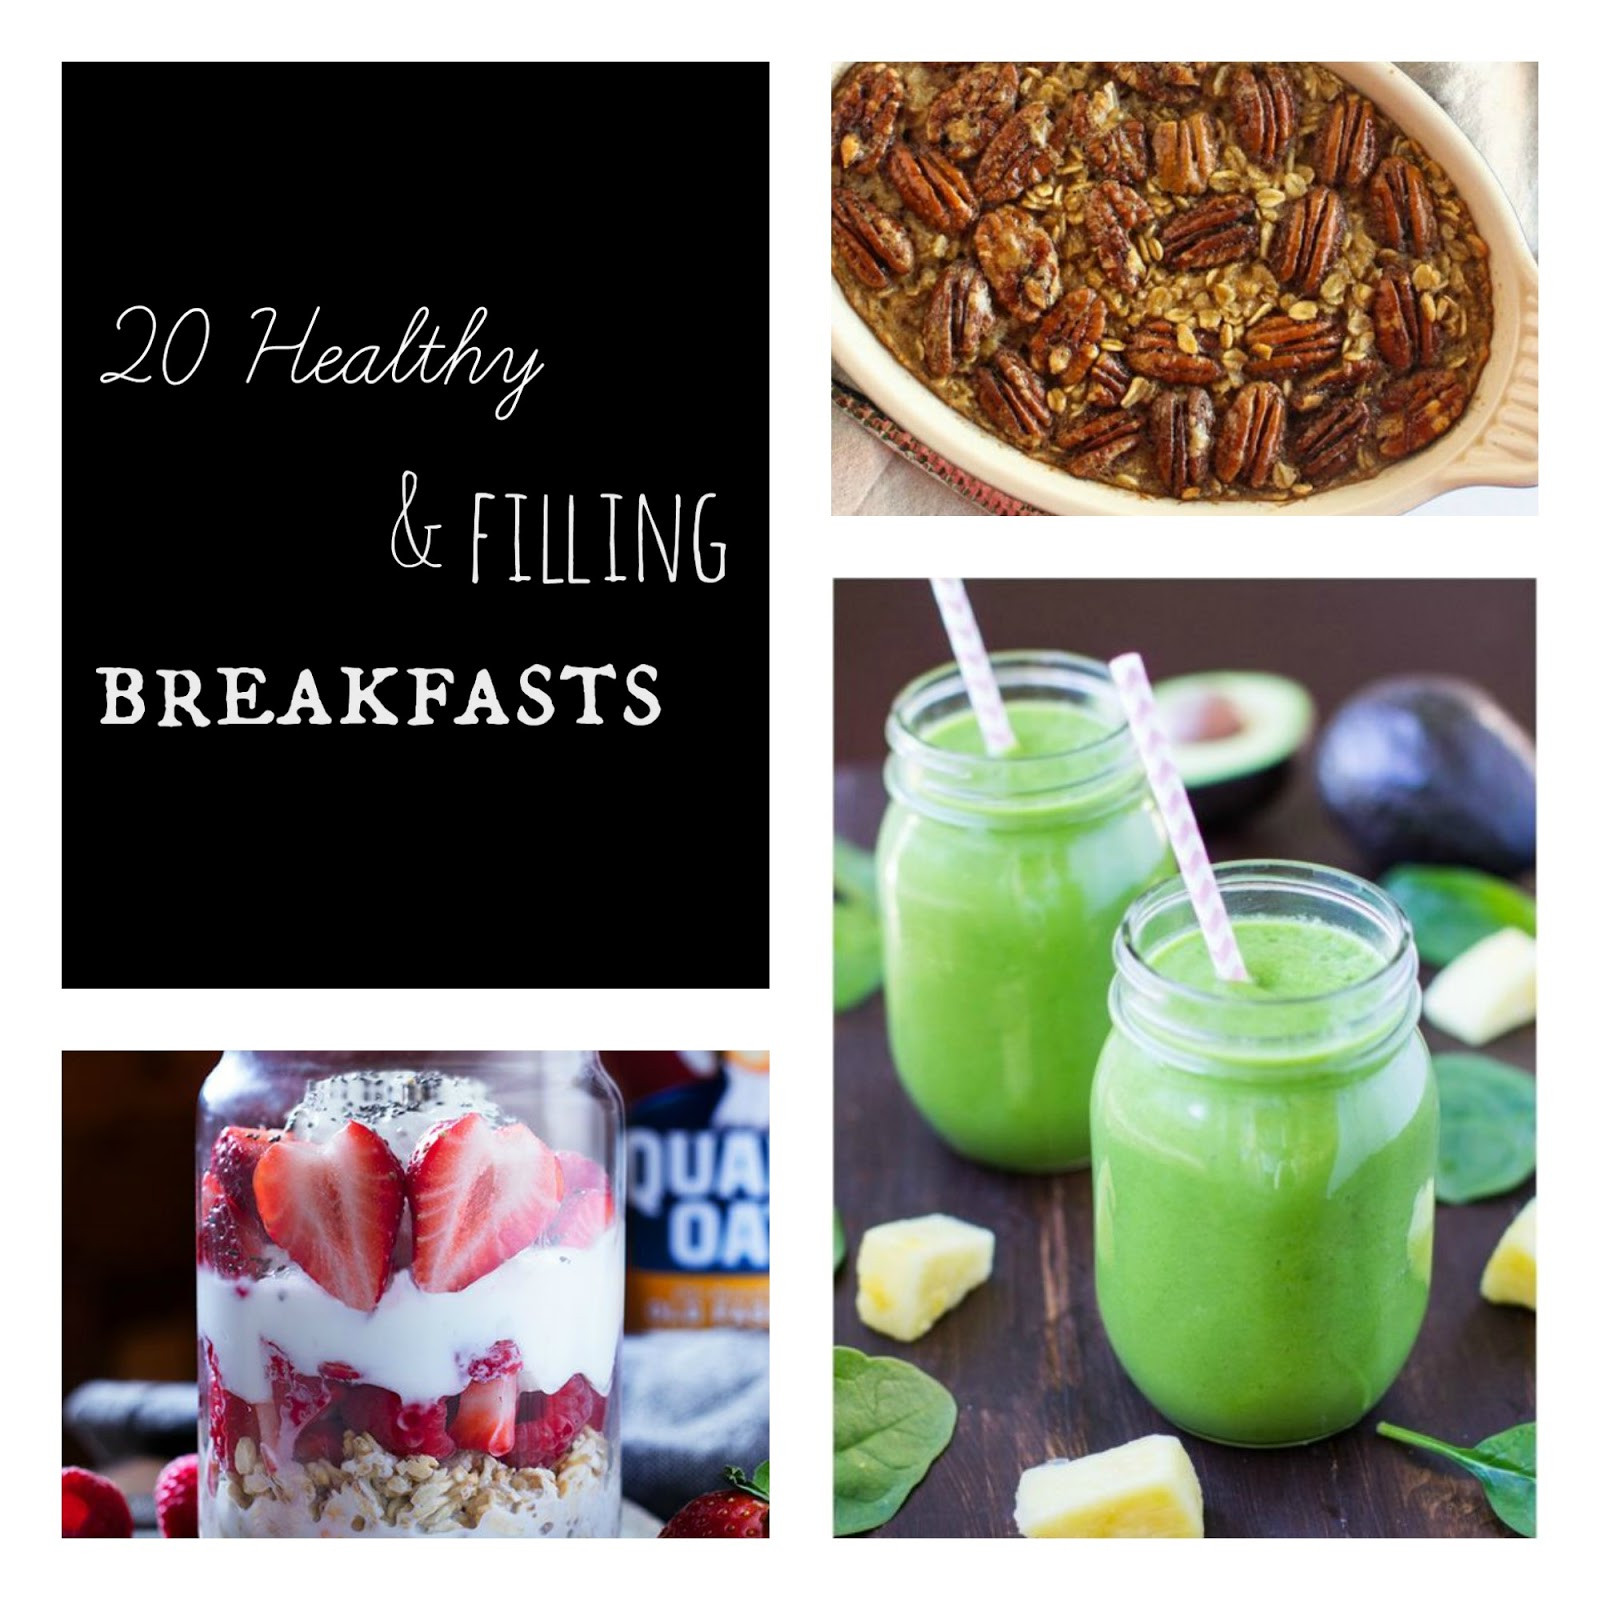 Healthy Filling Breakfast
 Keat s Eats 20 Healthy & Filling Breakfasts